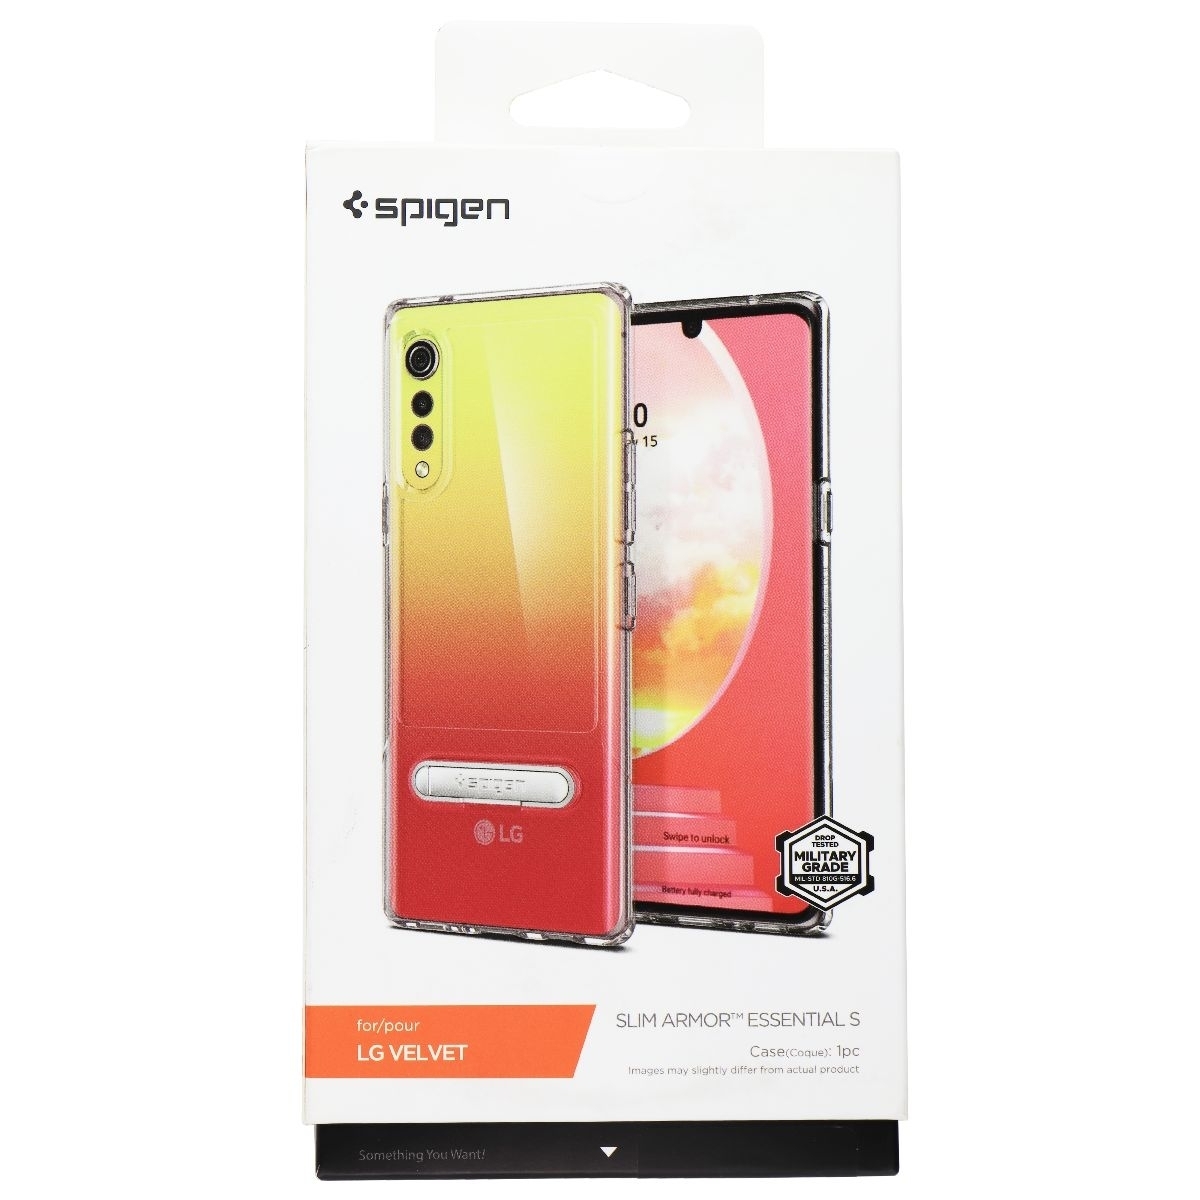 Spigen Slim Armor Essential S Case For LG Velvet - Clear (Refurbished)